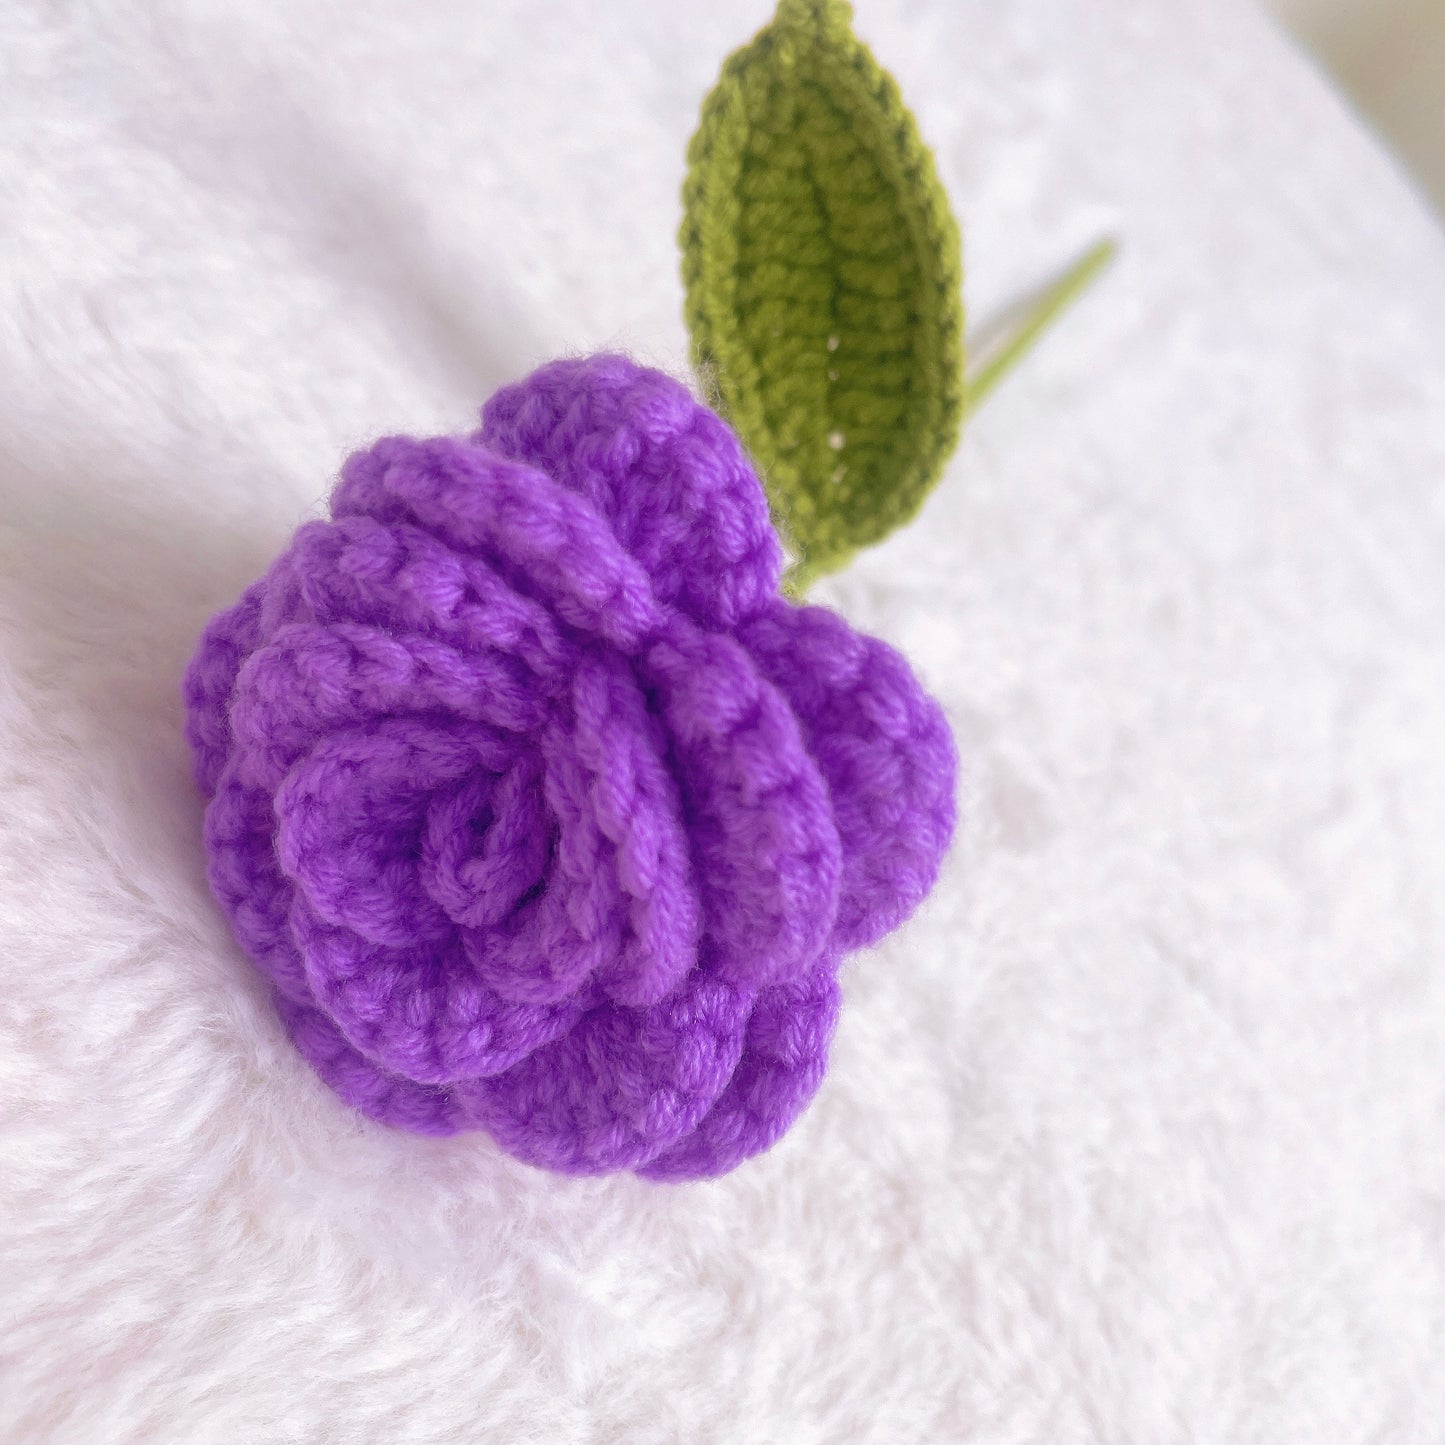 Bouquet de lavande d’été au crochet fabriqué à la main - Teintes violettes, tournesols, nuances de rose, lavande, crème et accents vibrants